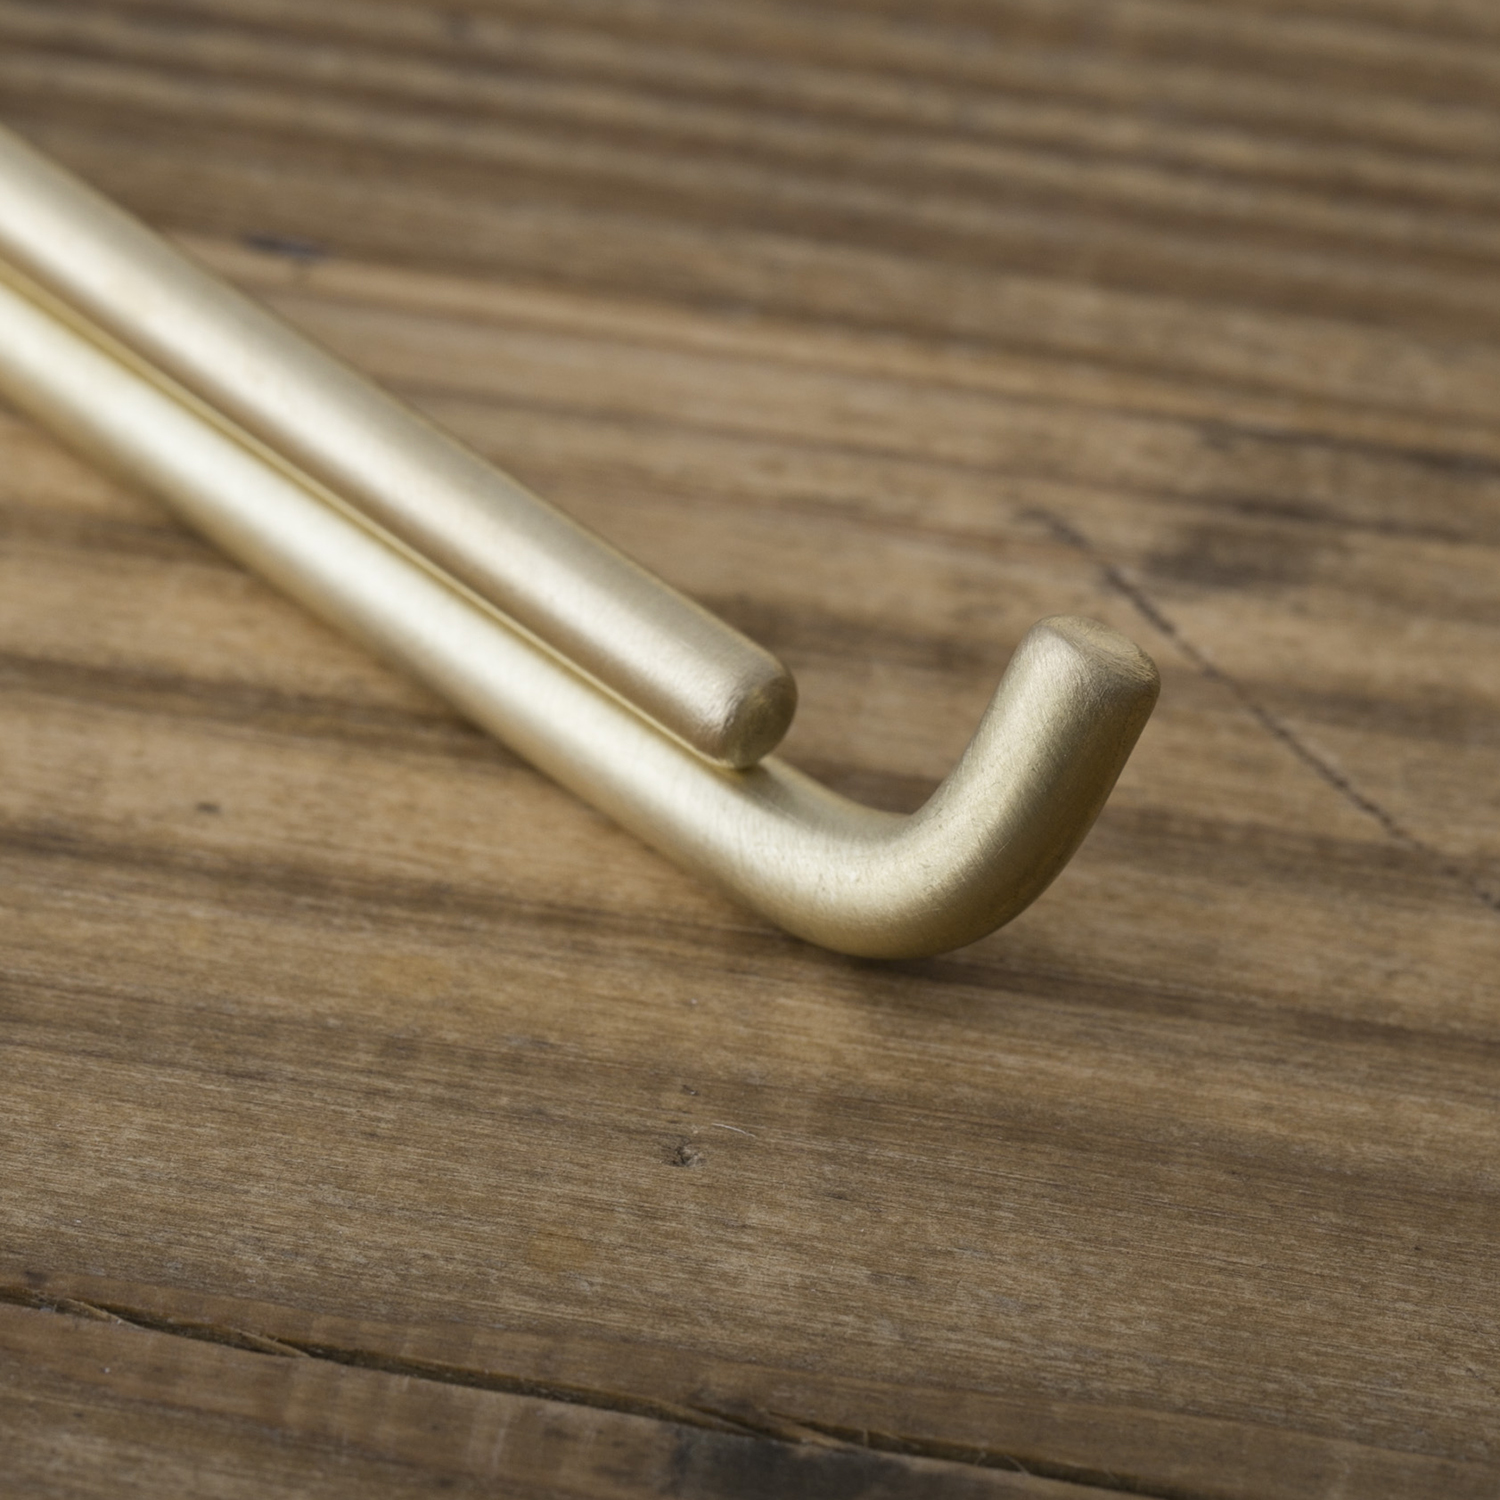 千葉工作所/Paper Holder Brass（ペーパーホルダー 真鍮） - トイレットペーパーの交換が楽な、絵になるホルダー